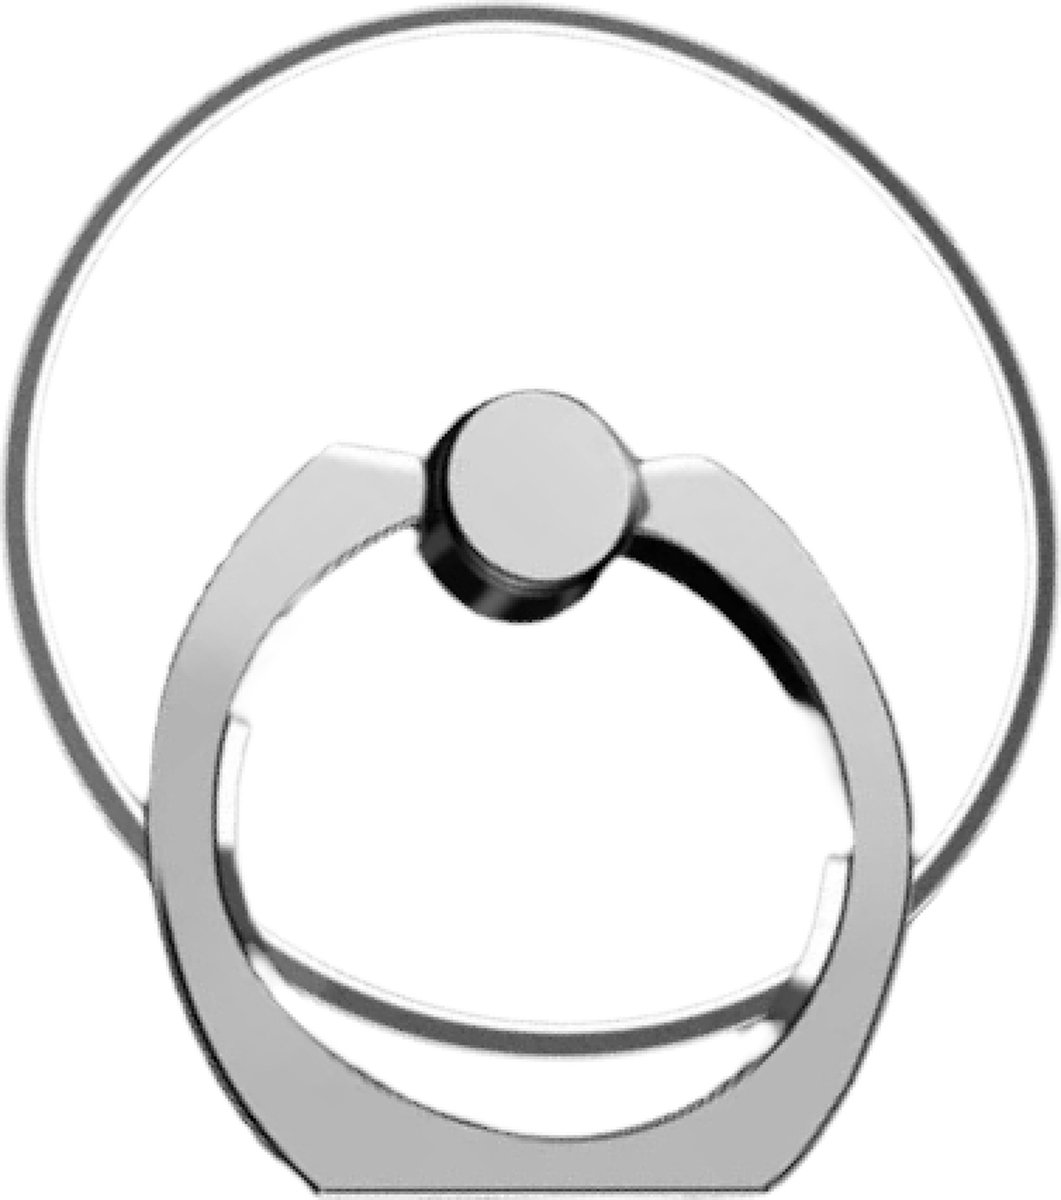 Bijoux by Ive - Transparante cirkel ringvinger houder / standaard voor je mobiele telefoon